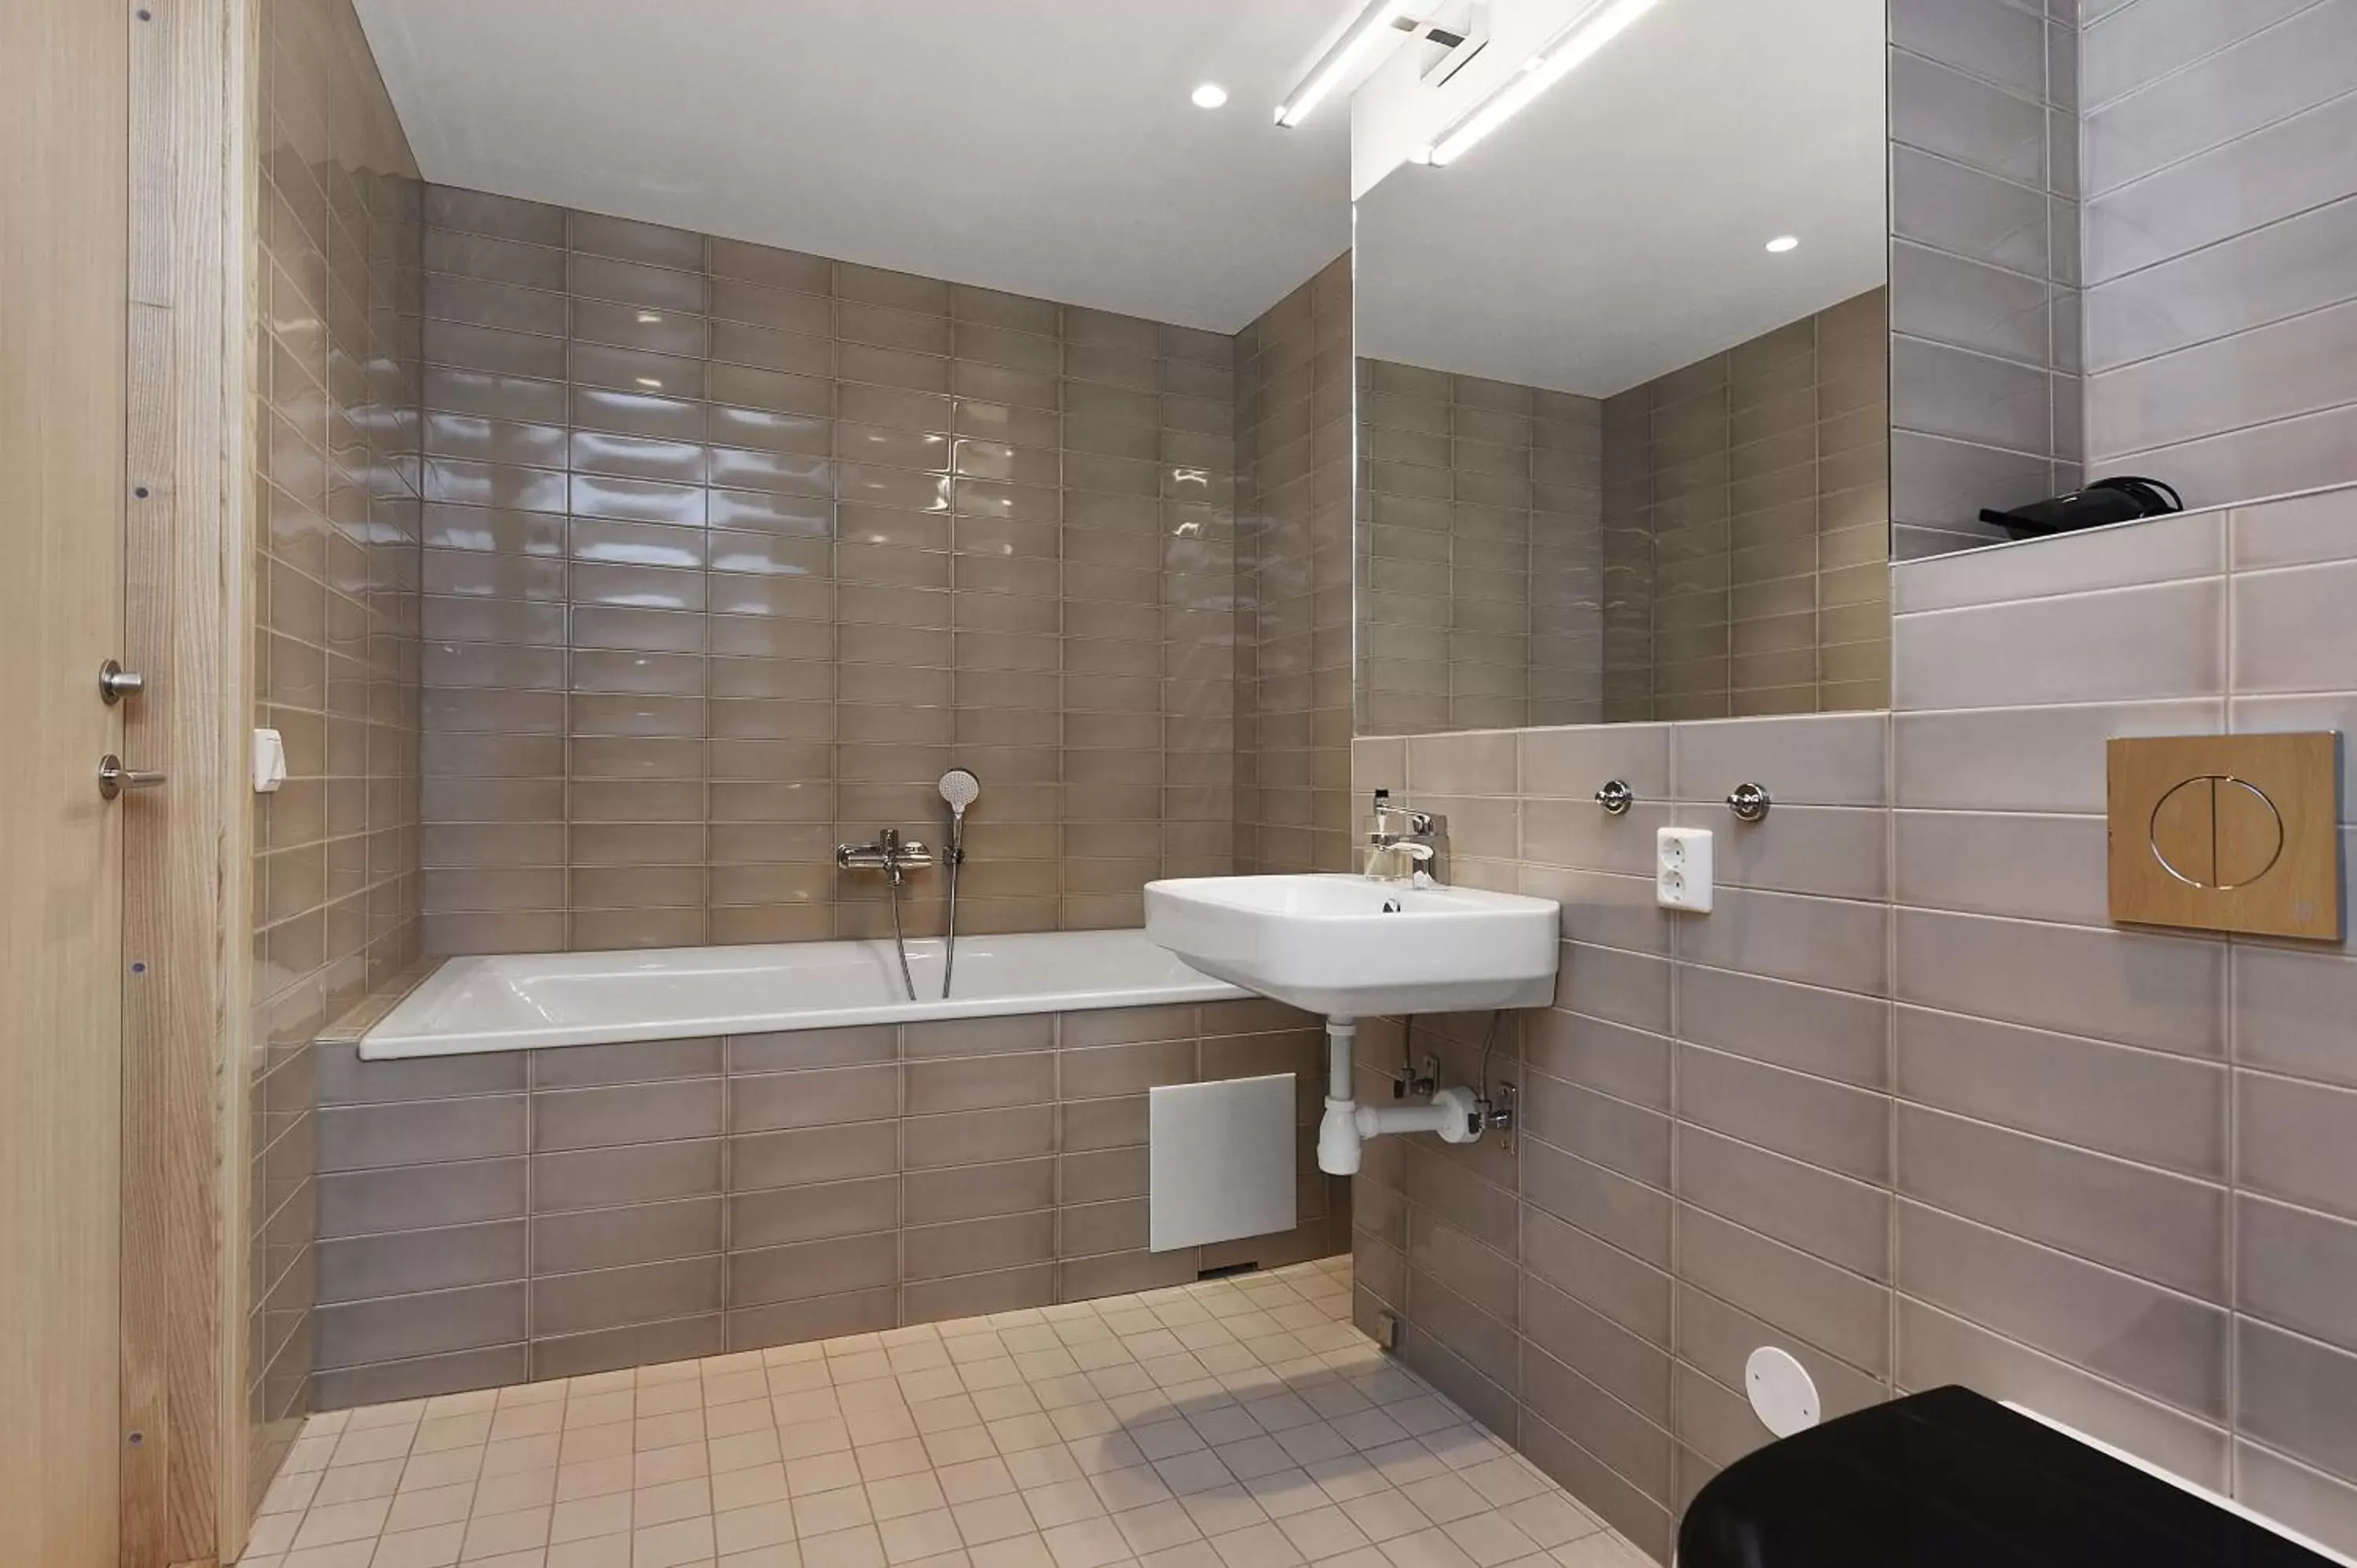 Shower, Bathroom in Ersta Hotell & Konferens